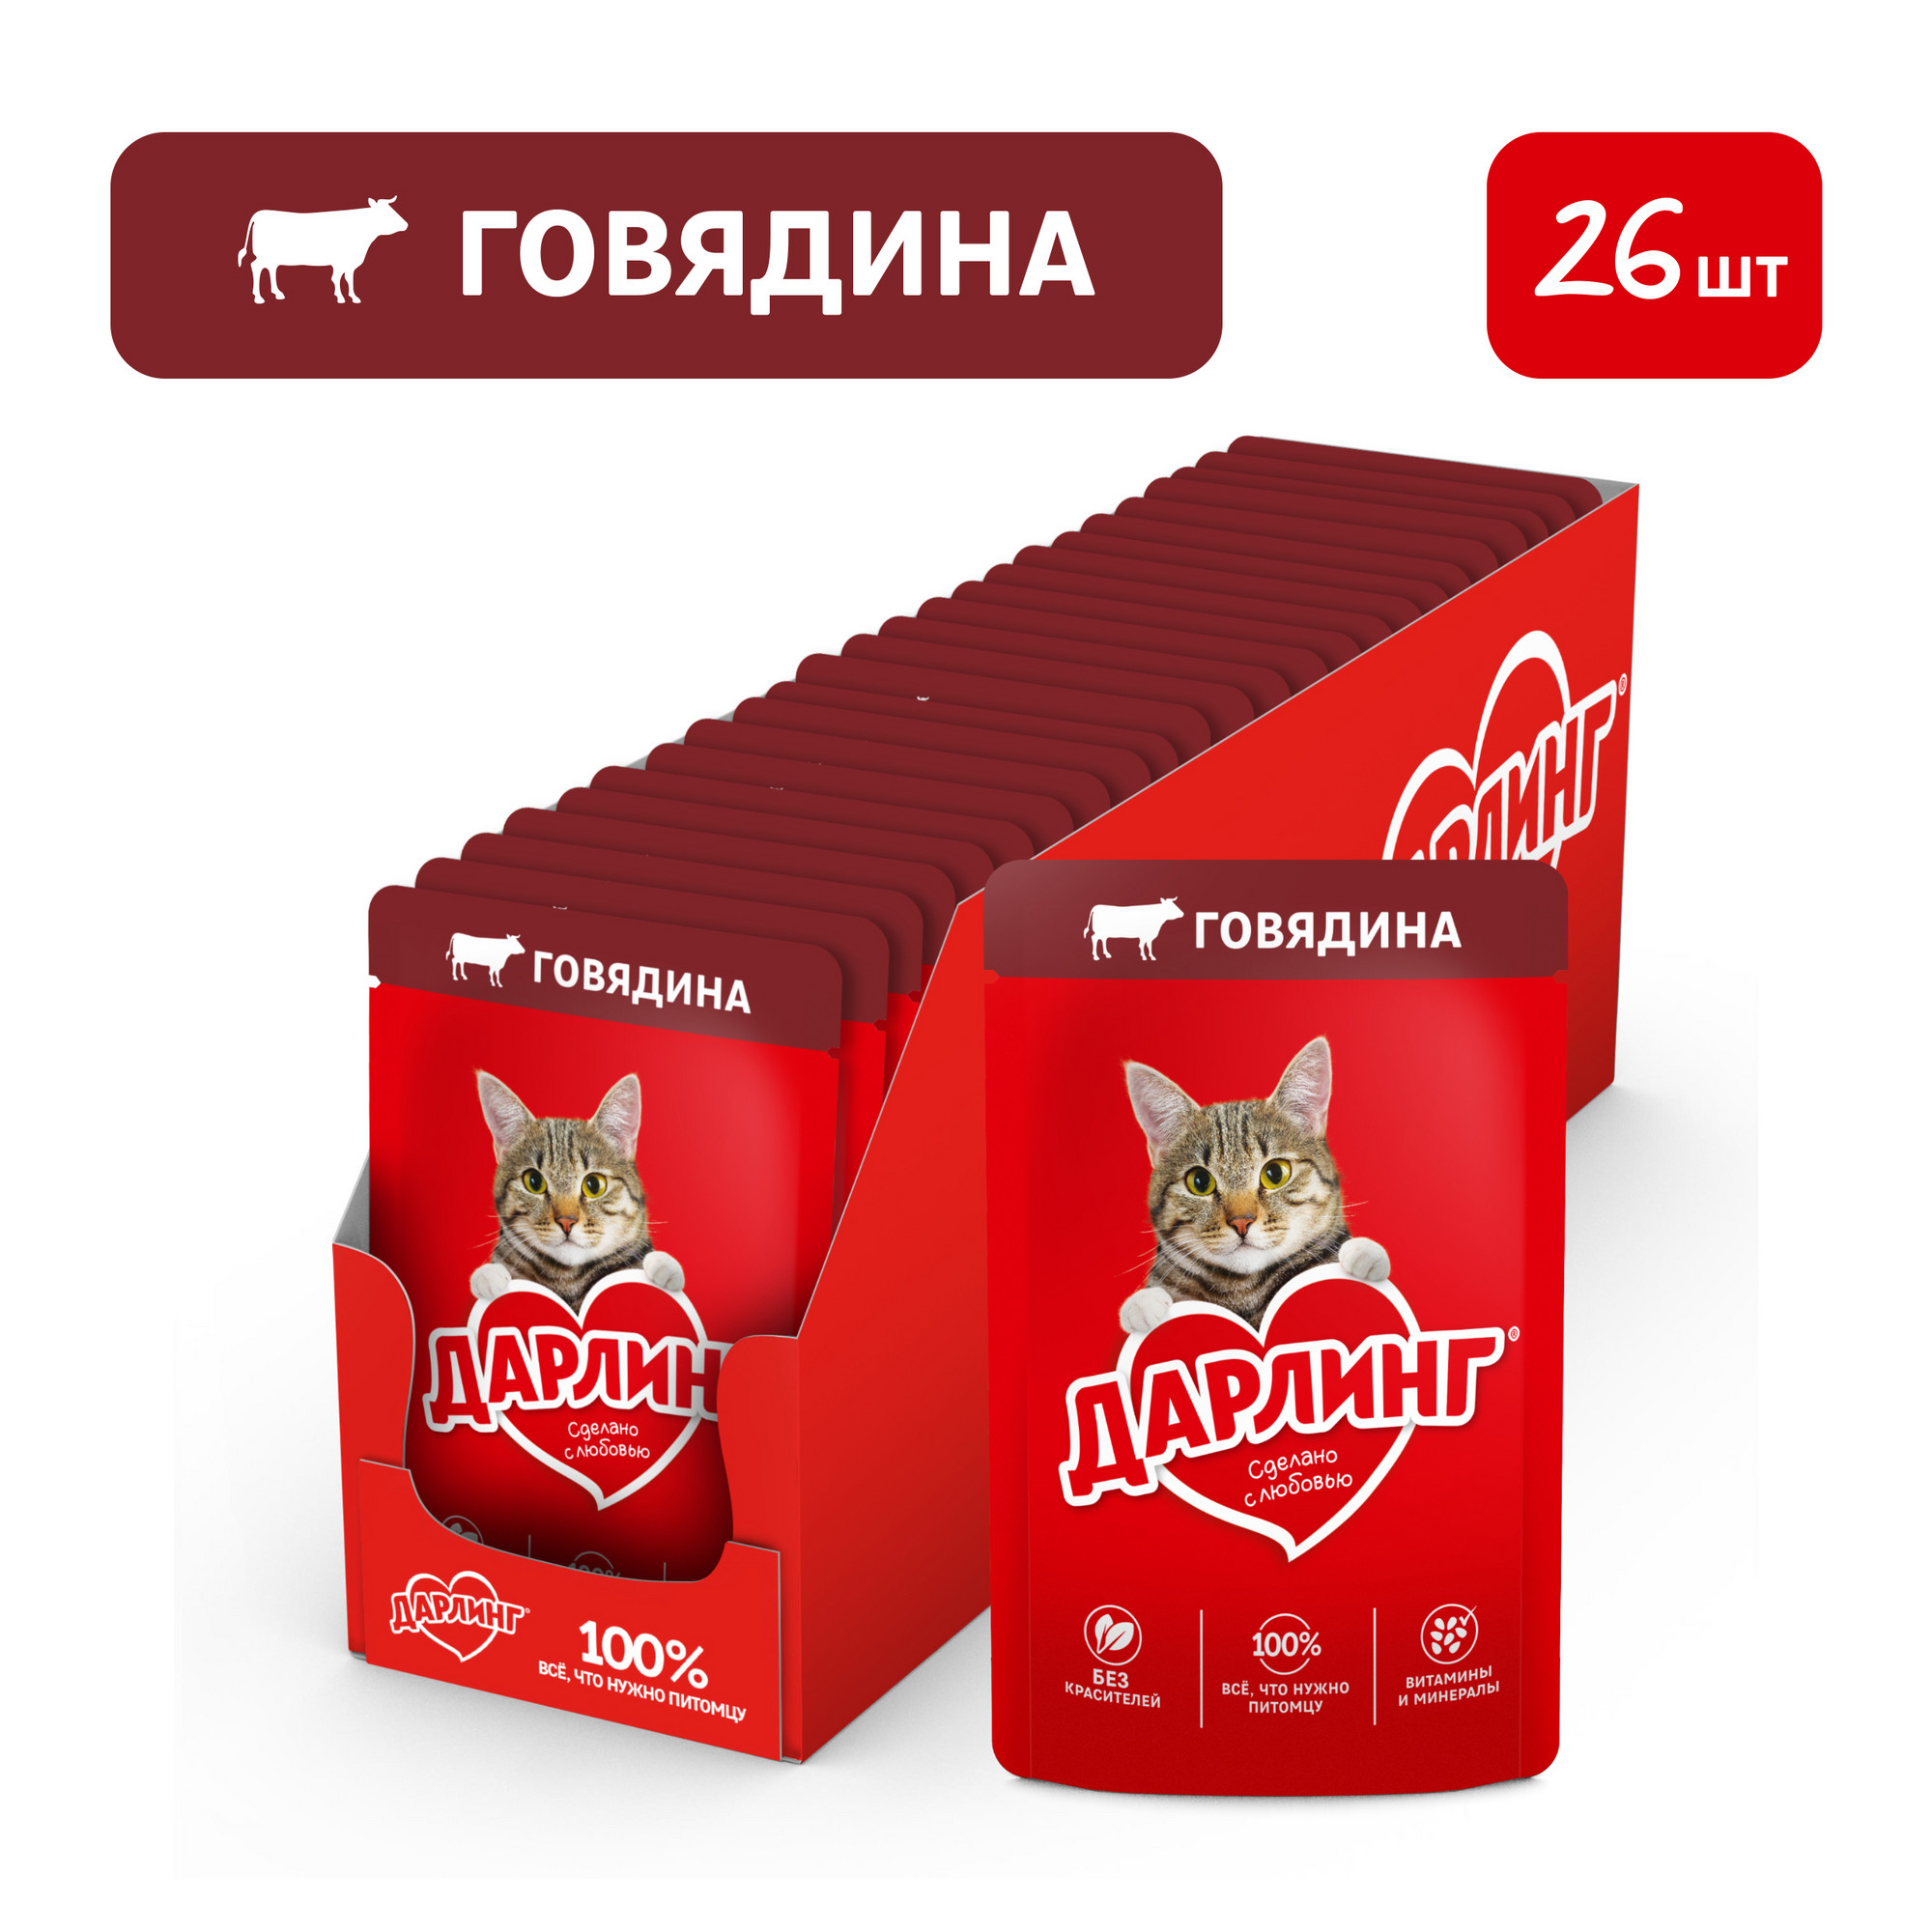 Влажный корм ДАРЛИНГ для взрослых кошек, с говядиной в соусе, 75 г*26 шт